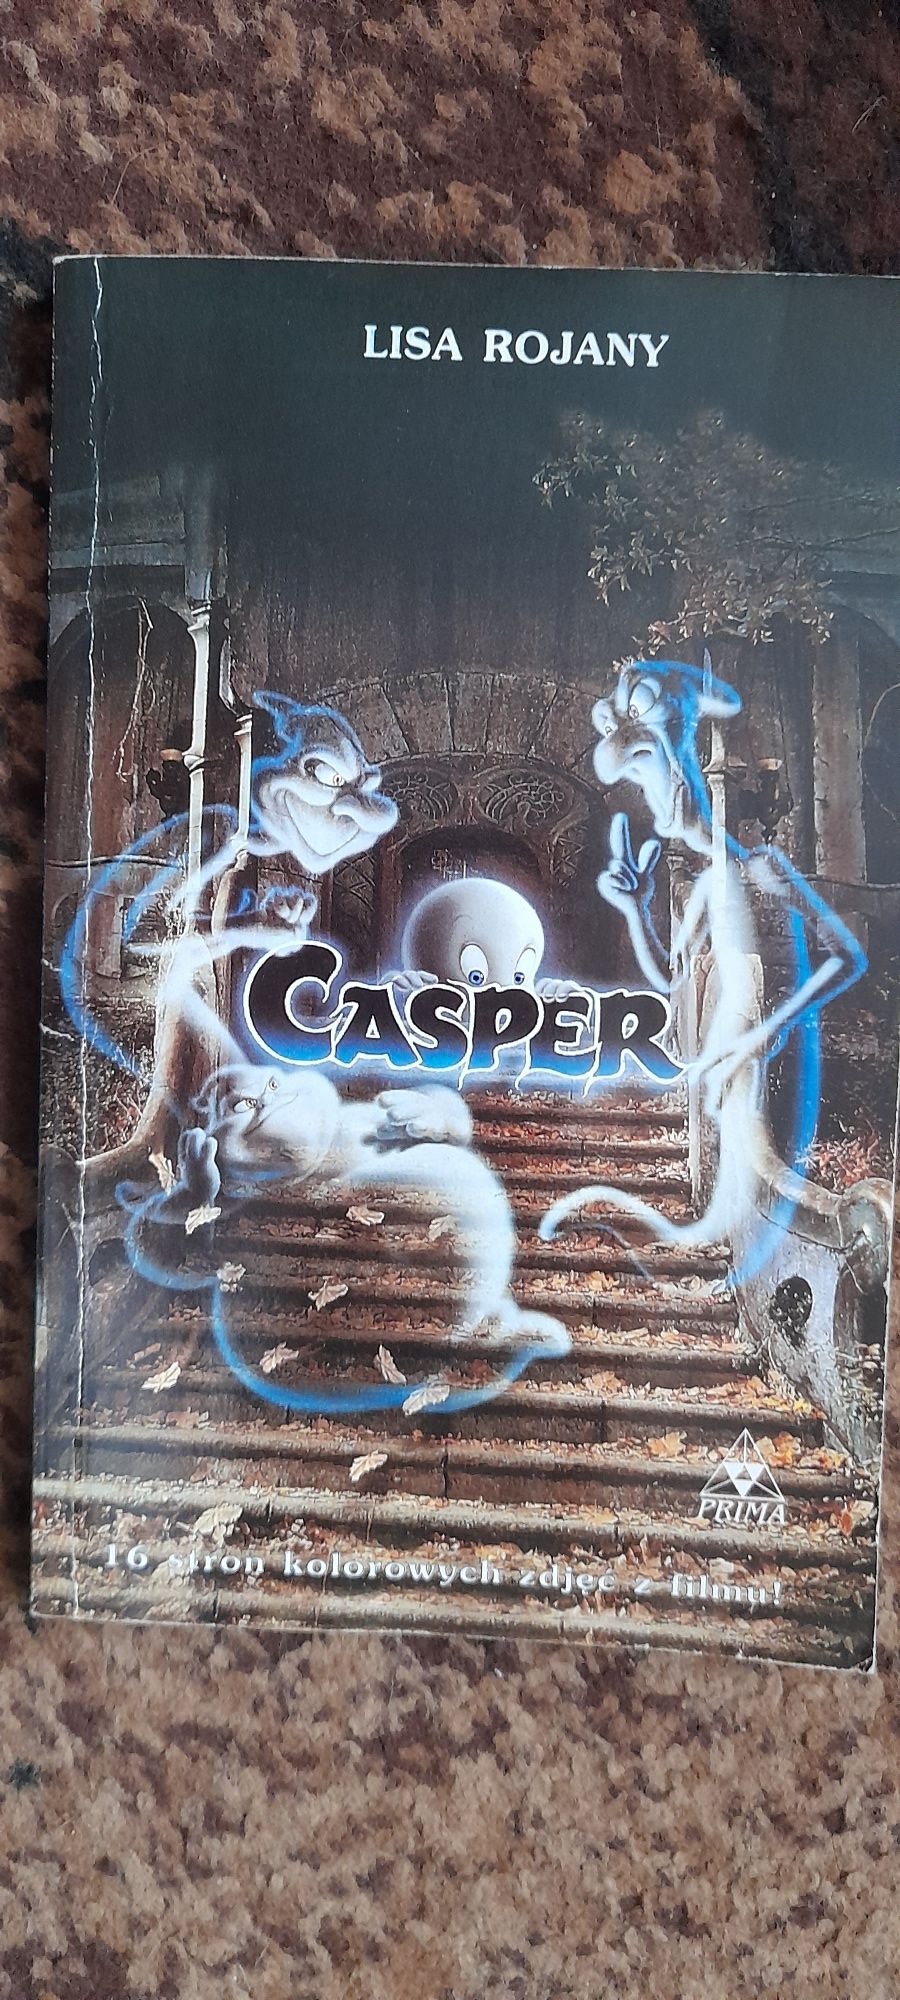 Casper - Lisa Rojany